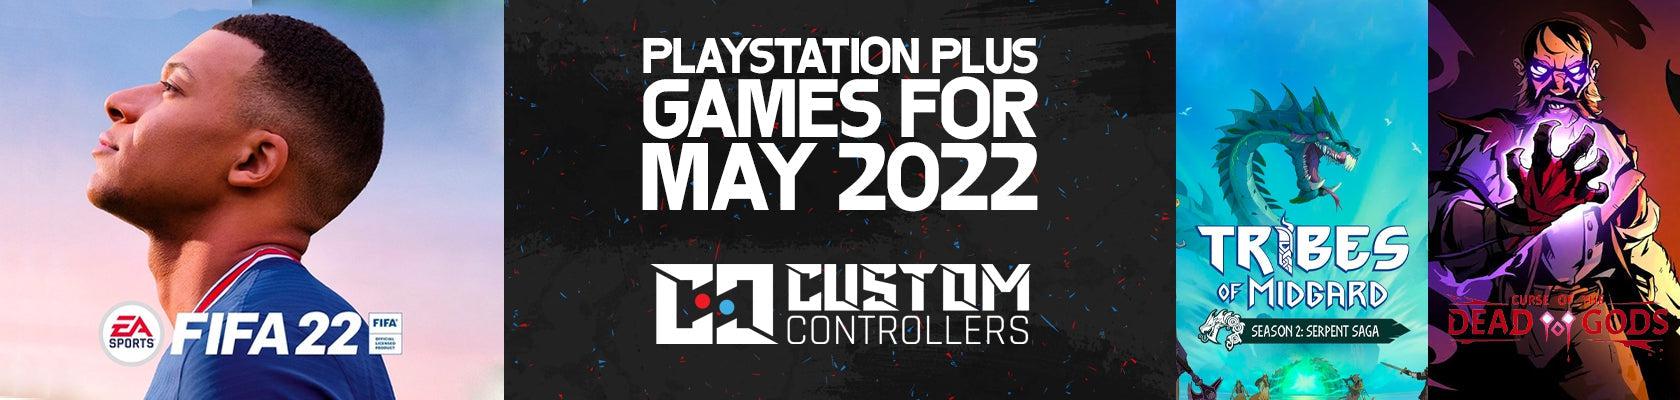 PS Plus Games May 2022-Custom Controllers UK